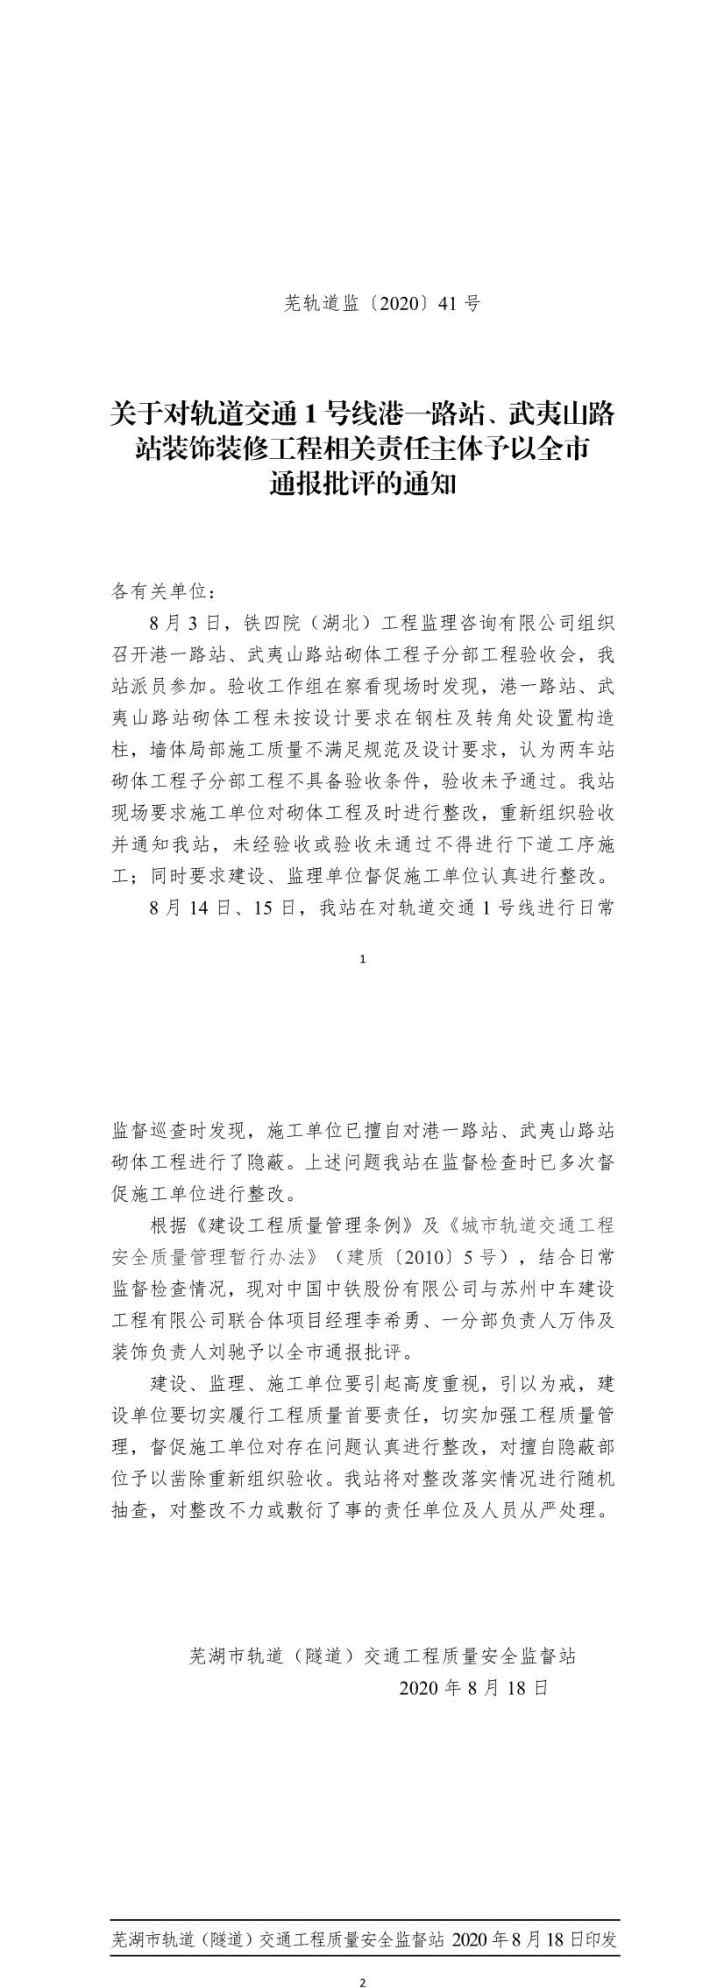 芜湖地铁 芜湖地铁1号线一工程被通报 中国中铁与苏州中车建设工程公司相关责任人被通报批评